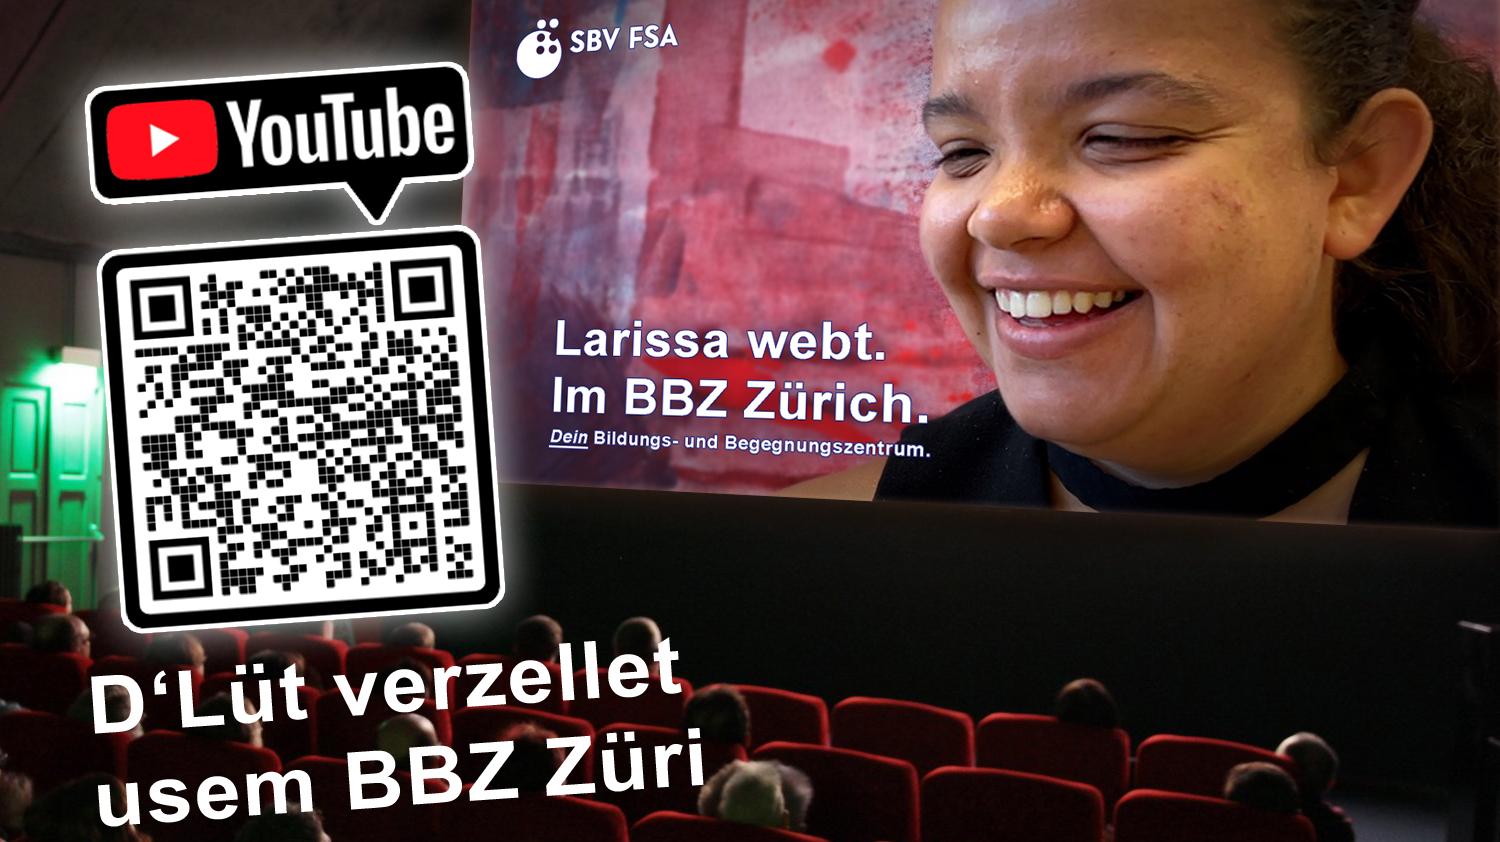 BILD: Ein Kinosaal mit Publikum. Vorne auf der Leinwand lacht Larissa herzlich, als sie beim Interview Red' und Antwort steht. Titel auf der Leinwand: "Larissa webt. Im BBZ Zürich. Dein Bildungs- und Begegnungszentrum". Zudem ein QR-Code der direkt auf das YouTube-Video führt.